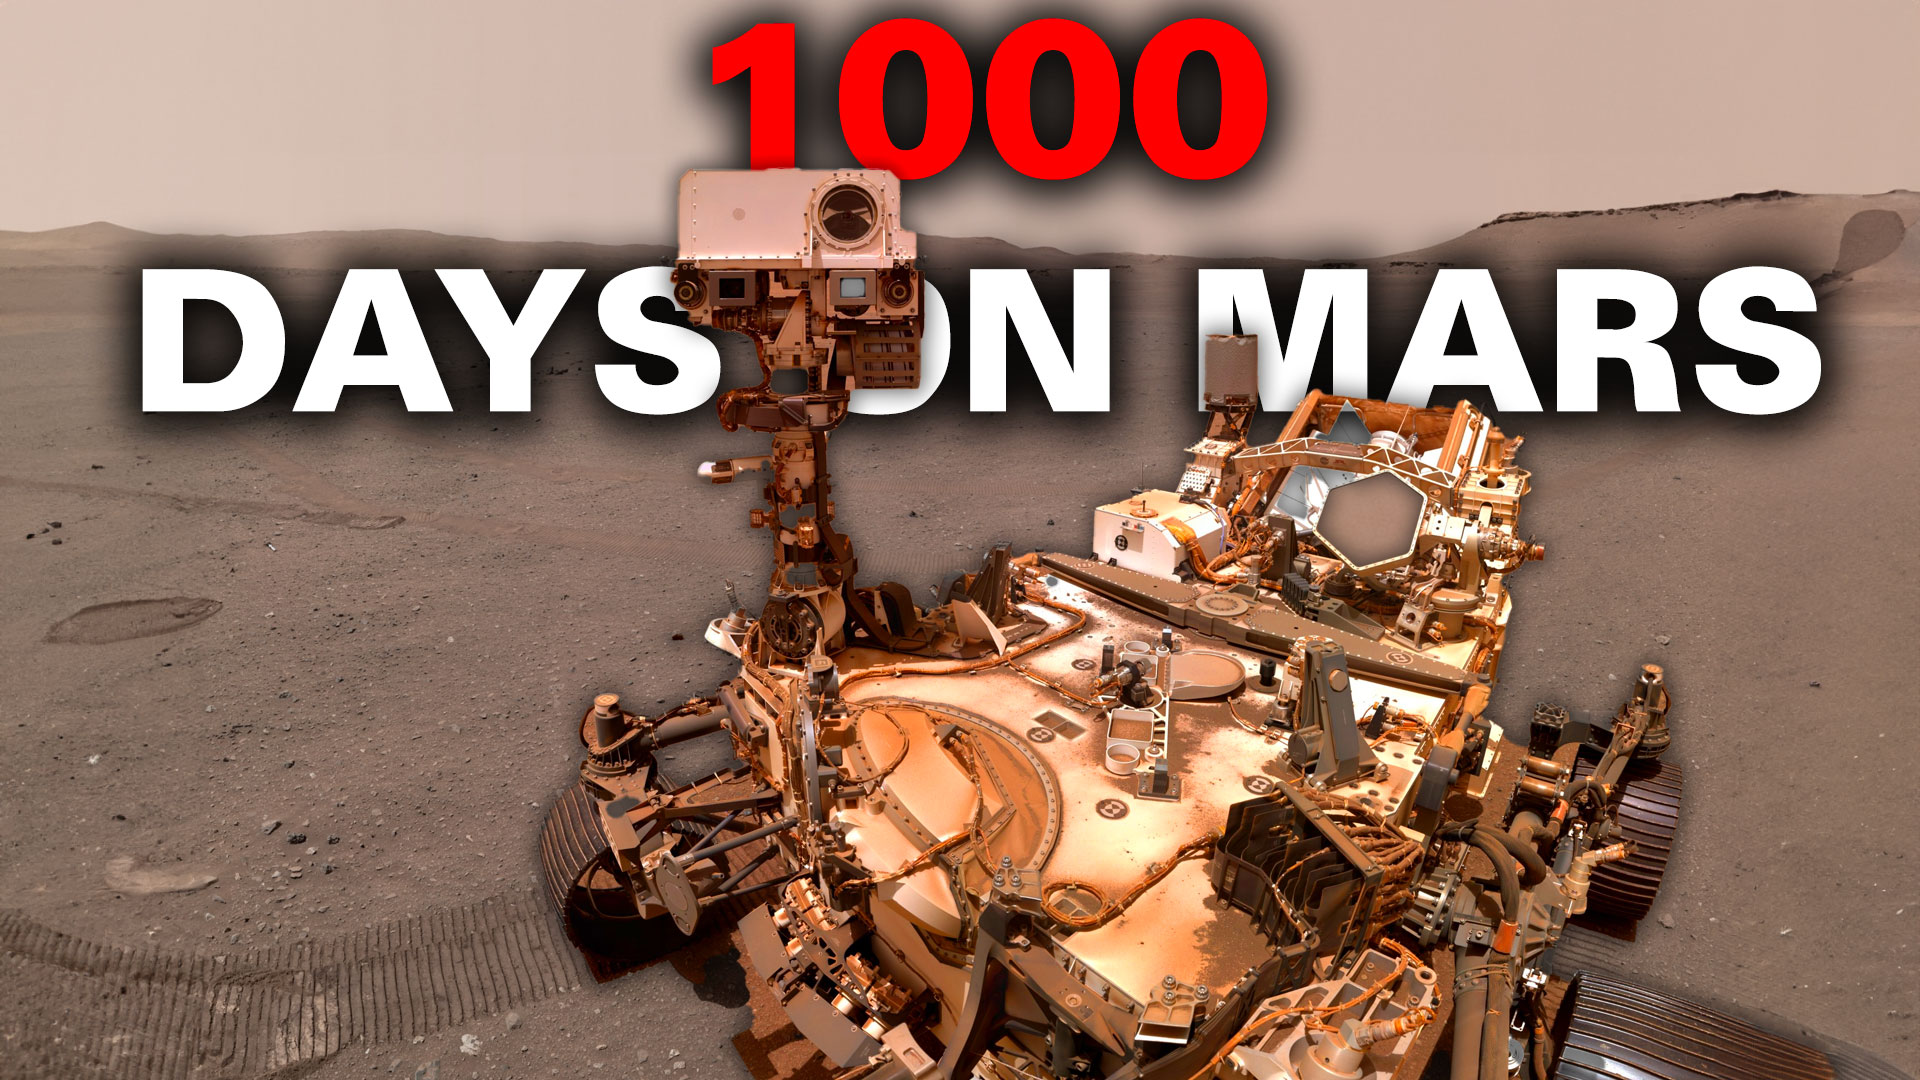 Perseverance concluye más de 1.000 días en Marte.  Todavía va fuerte